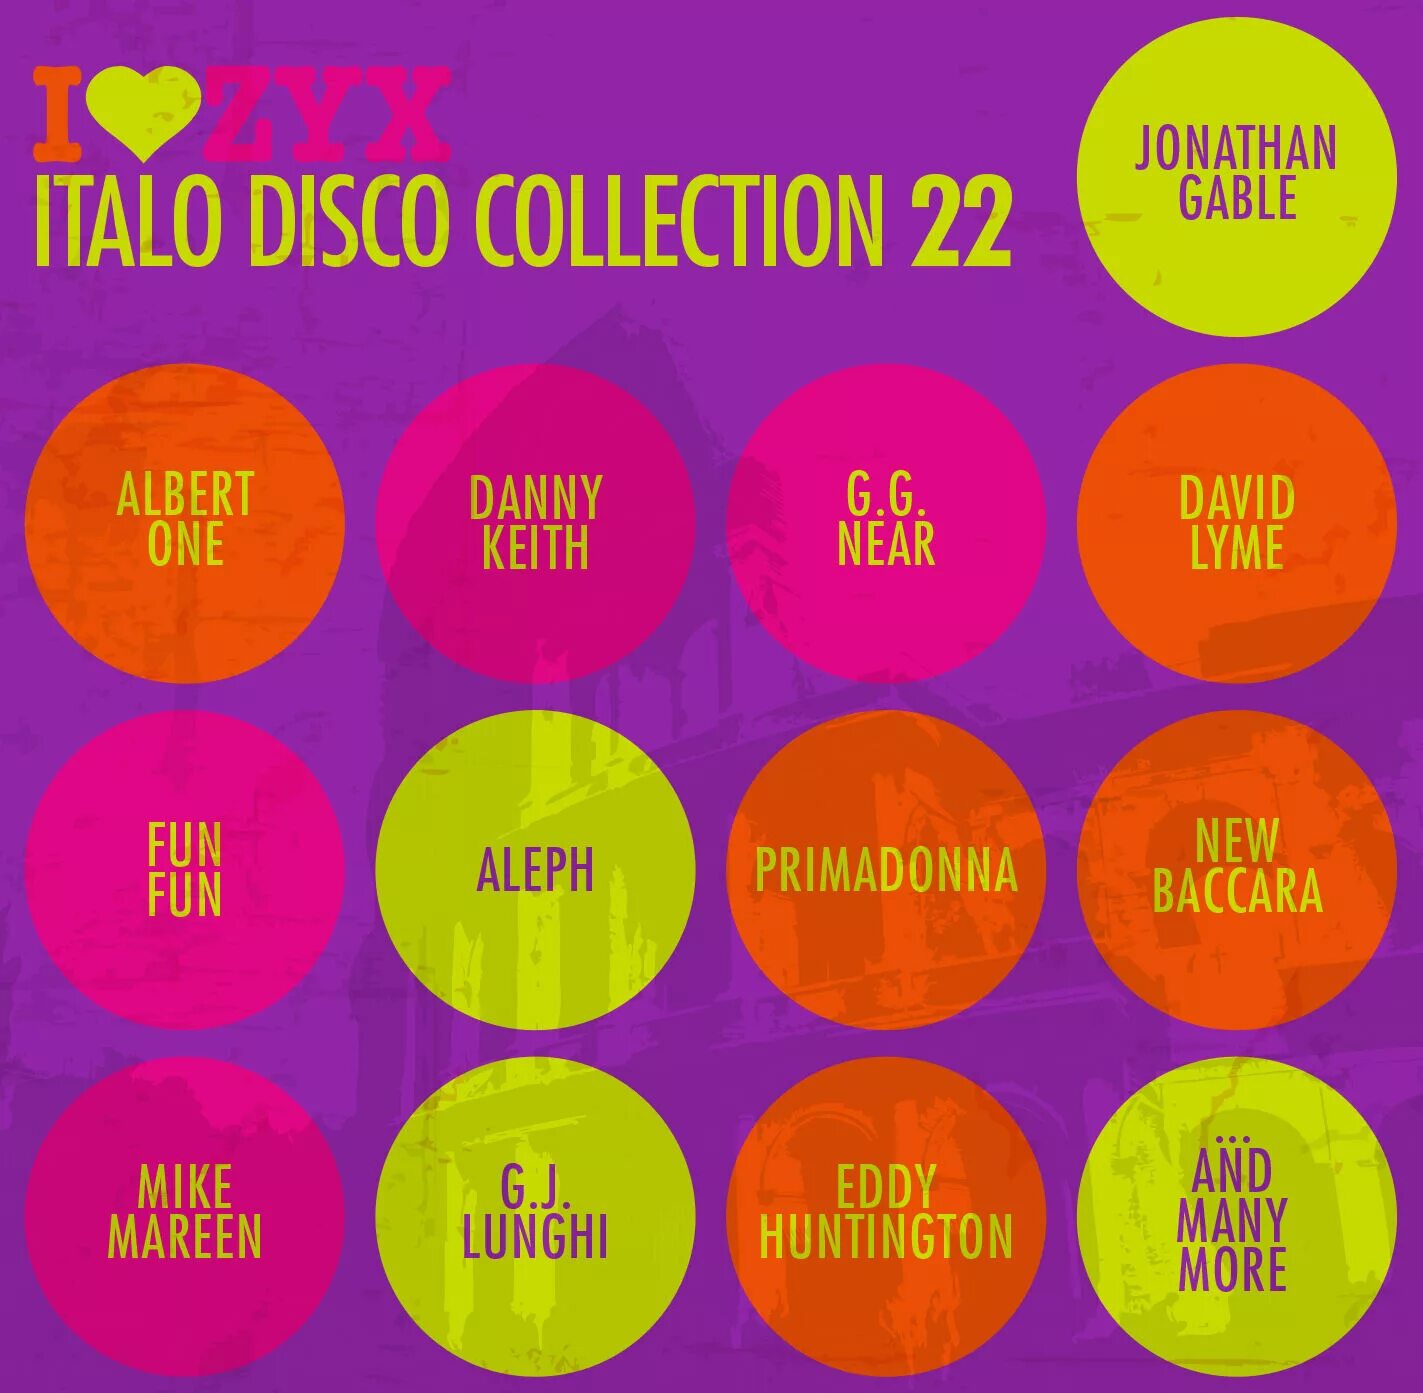 Italo disco collection. I Love ZYX Italo Disco collection. Italo Disco collection фото. I Love ZYX Italo Disco collection 16. ZYX Italo 2022 vol20.